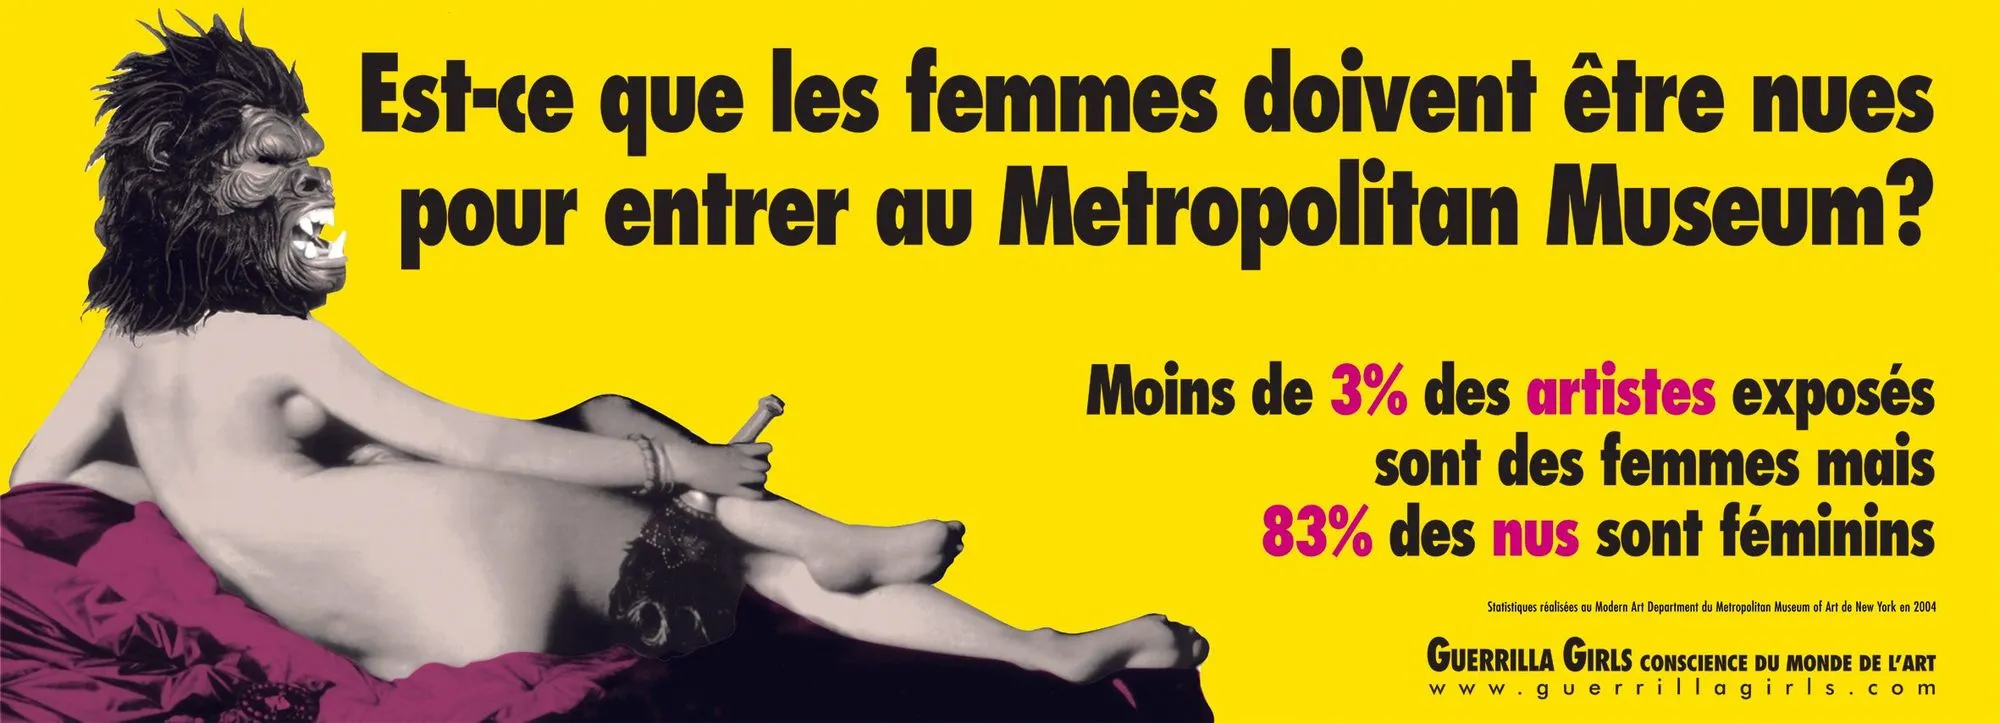 Guerrilla Girls, Est-ce que les femmes doivent être nues pour entrer au Metropolitan Museum ?, 1989, affiche publicitaire.